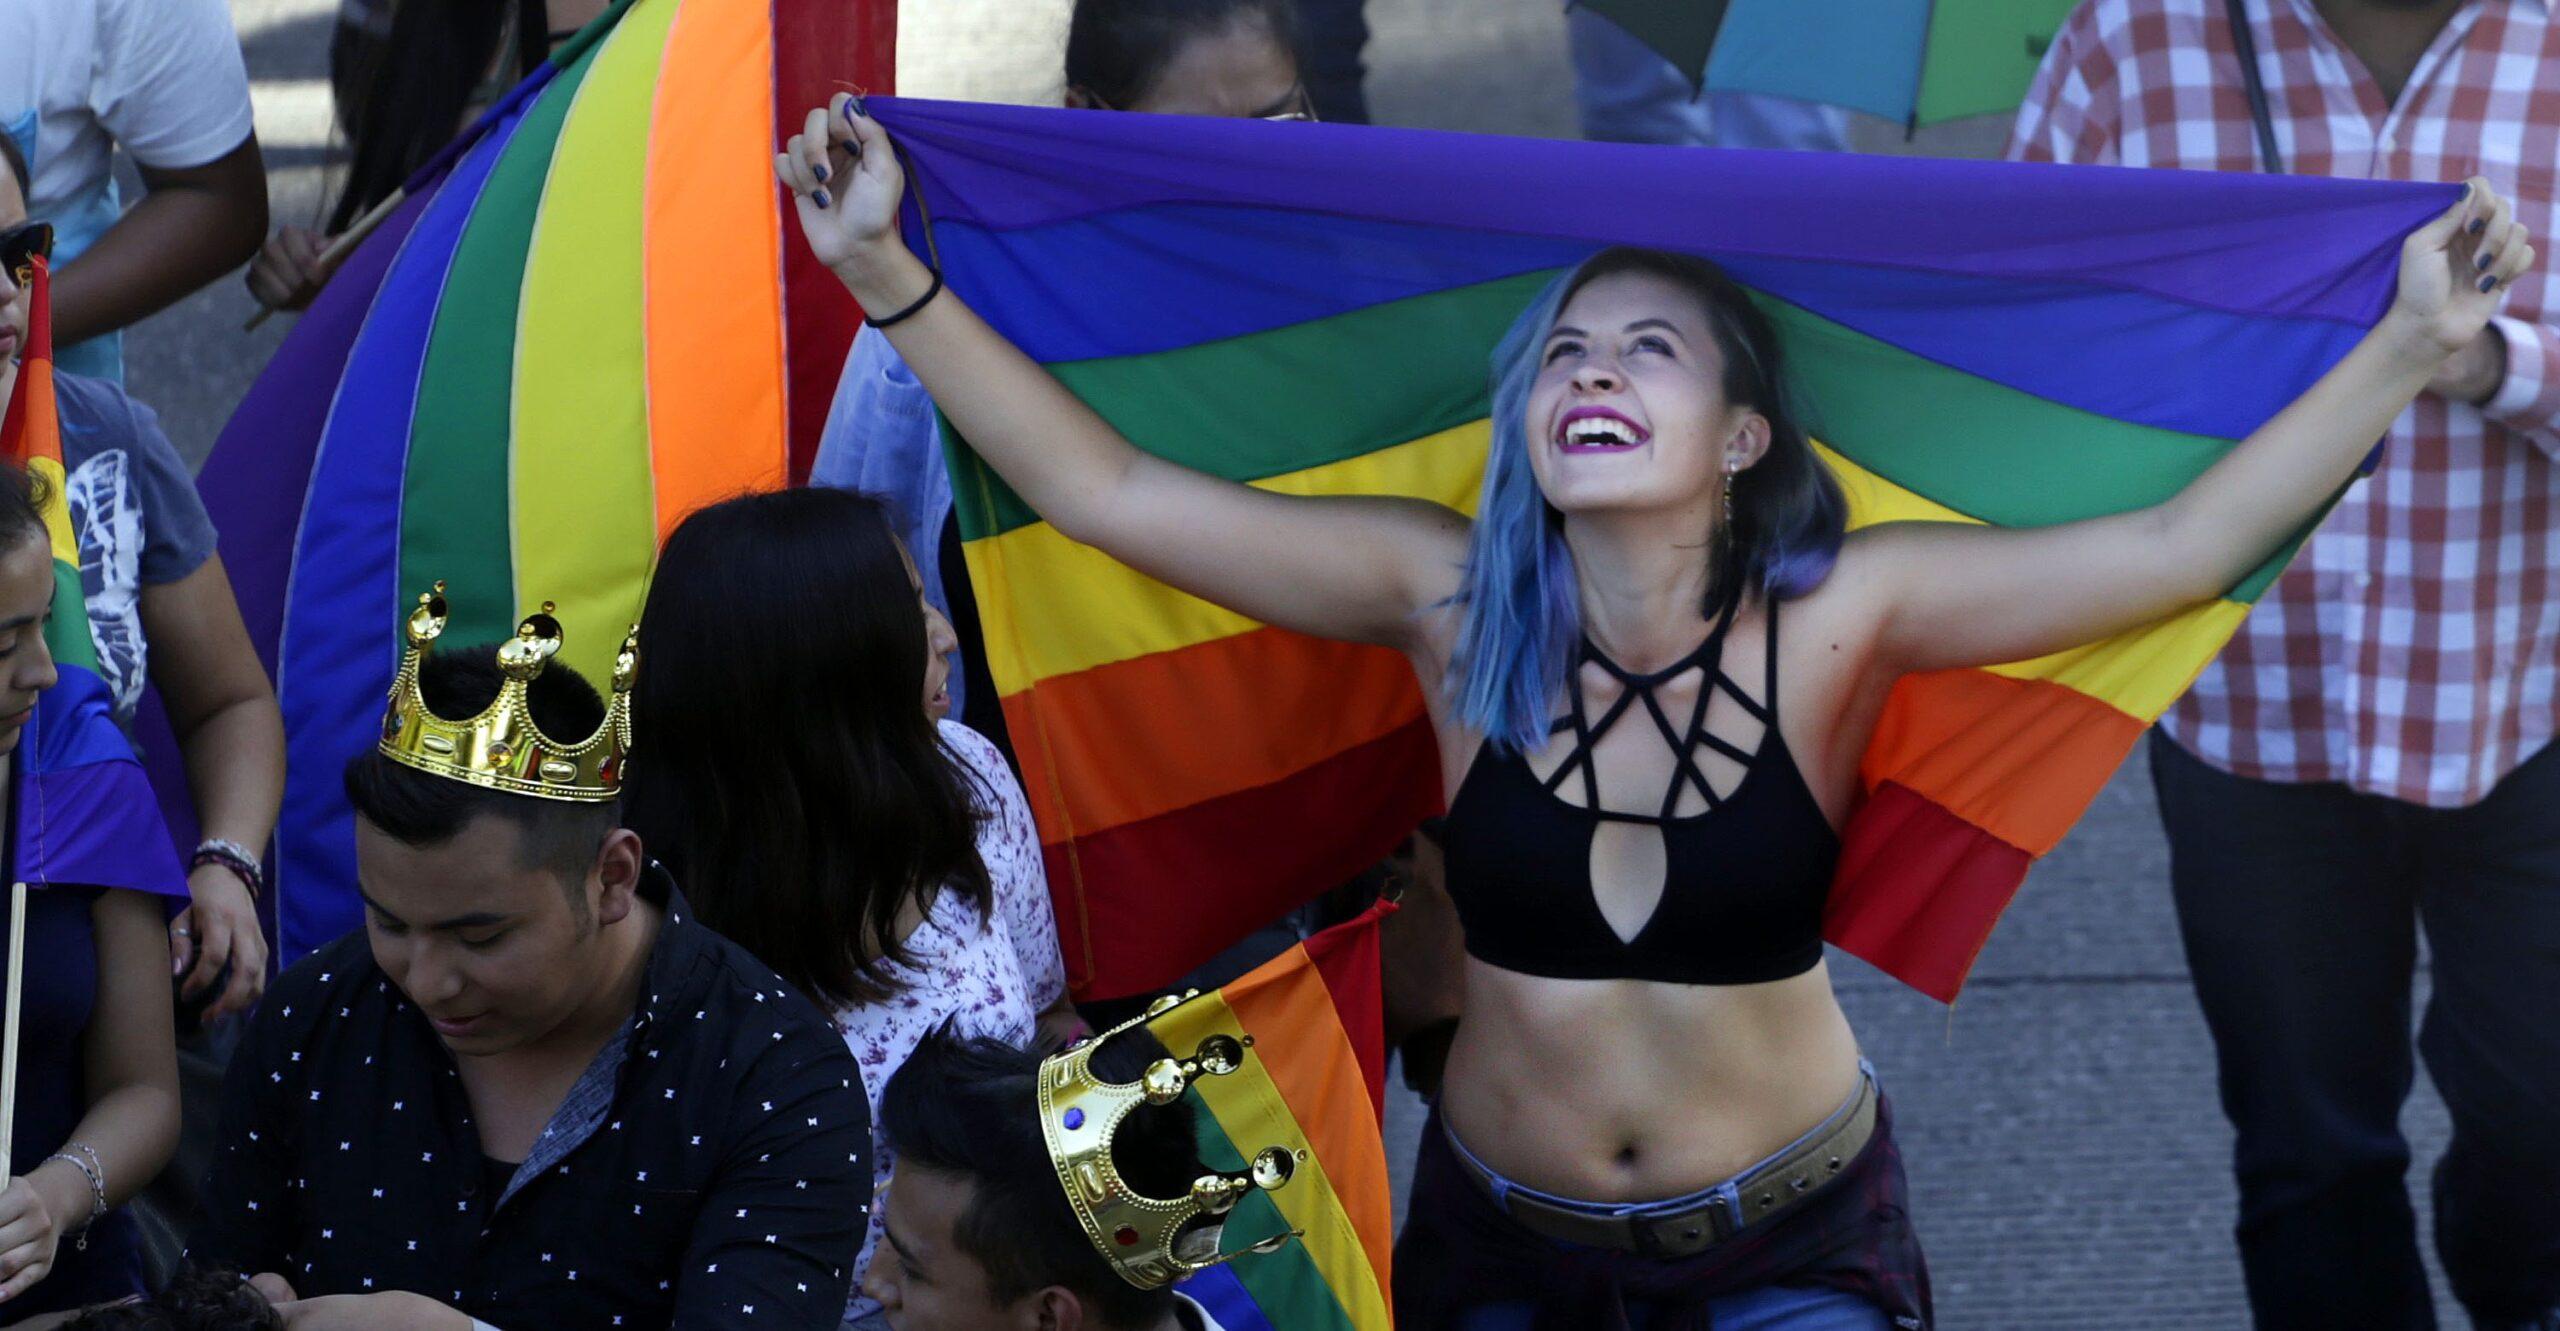 Universidad La Salle cancela conferencia sobre “falsos derechos” de mujeres y comunidad LGBT